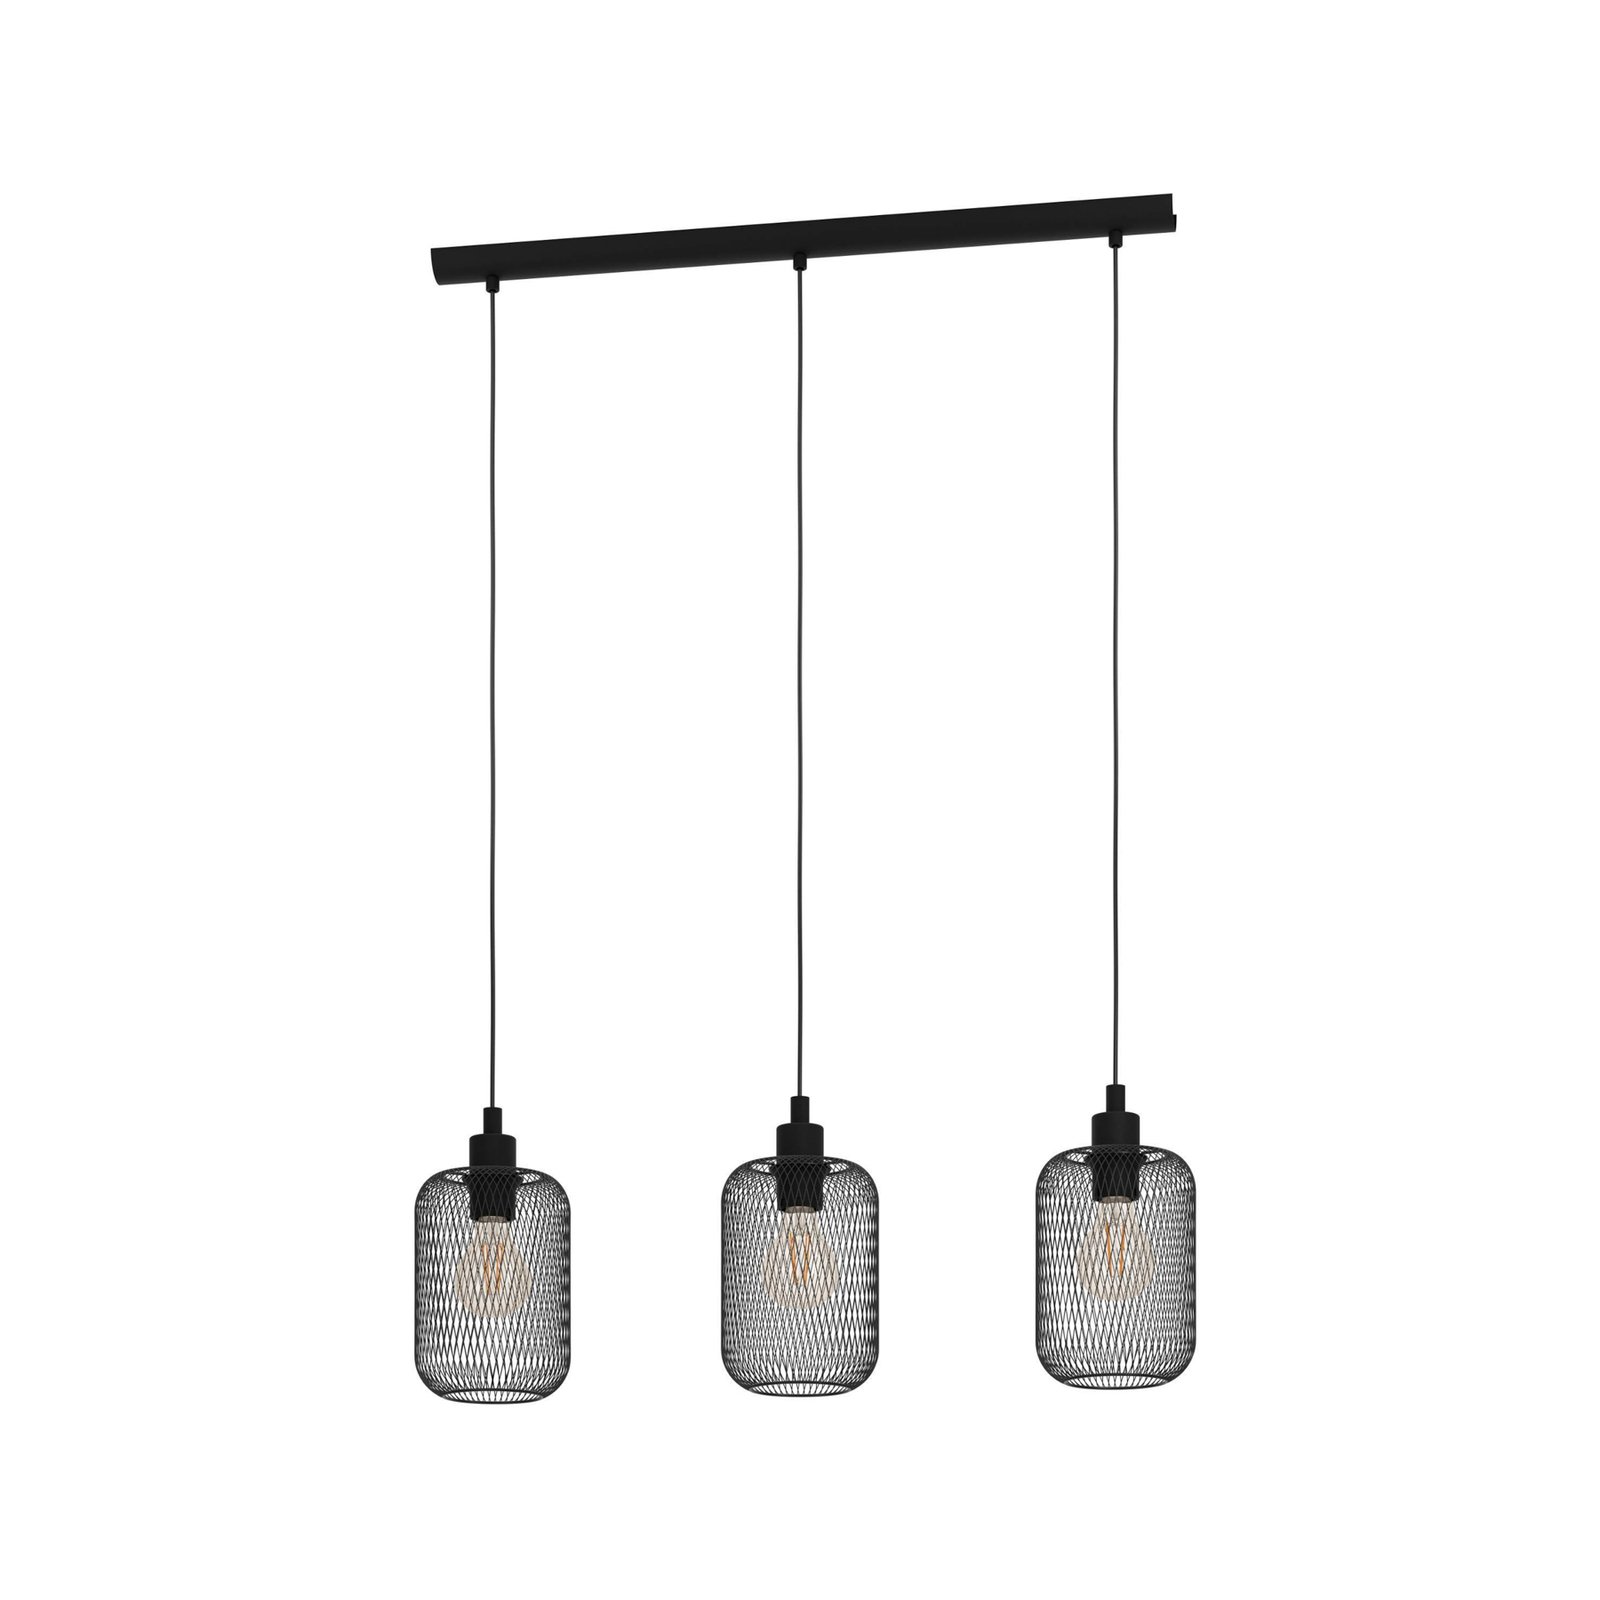 Candeeiro suspenso Wrington, comprimento 74 cm, preto, 3 lâmpadas, aço